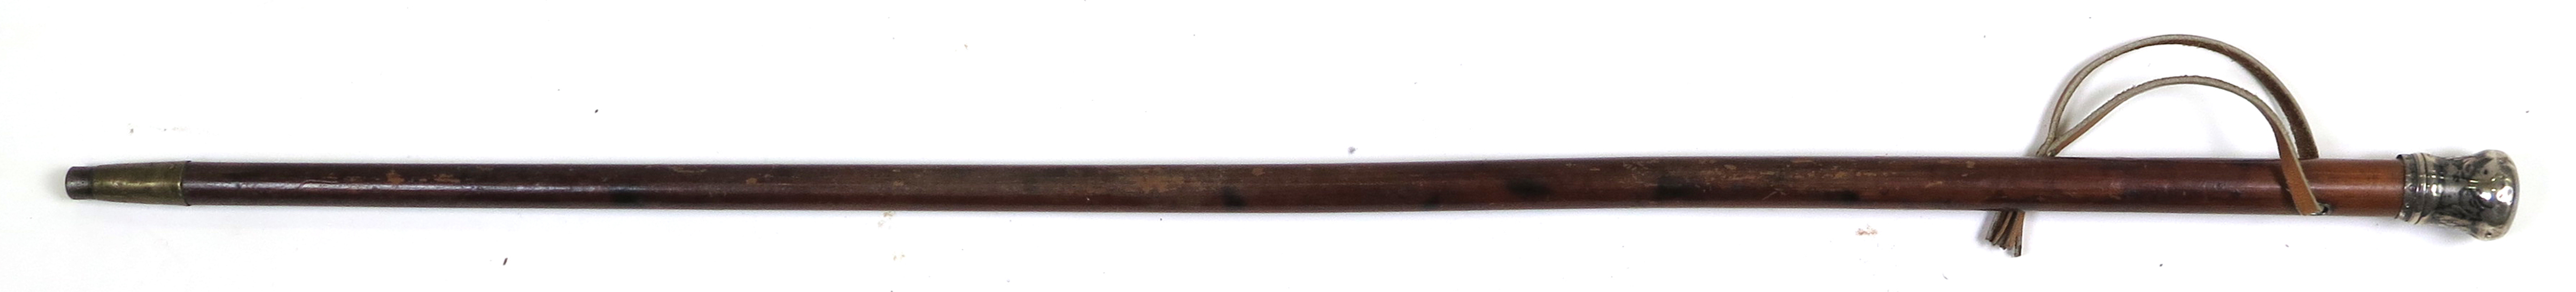 Käpp med silverkrycka, så kallat spanskrör, gustaviansk, otydliga stämplar Stockhom 1772, l 88 cm_31180a_lg.jpeg